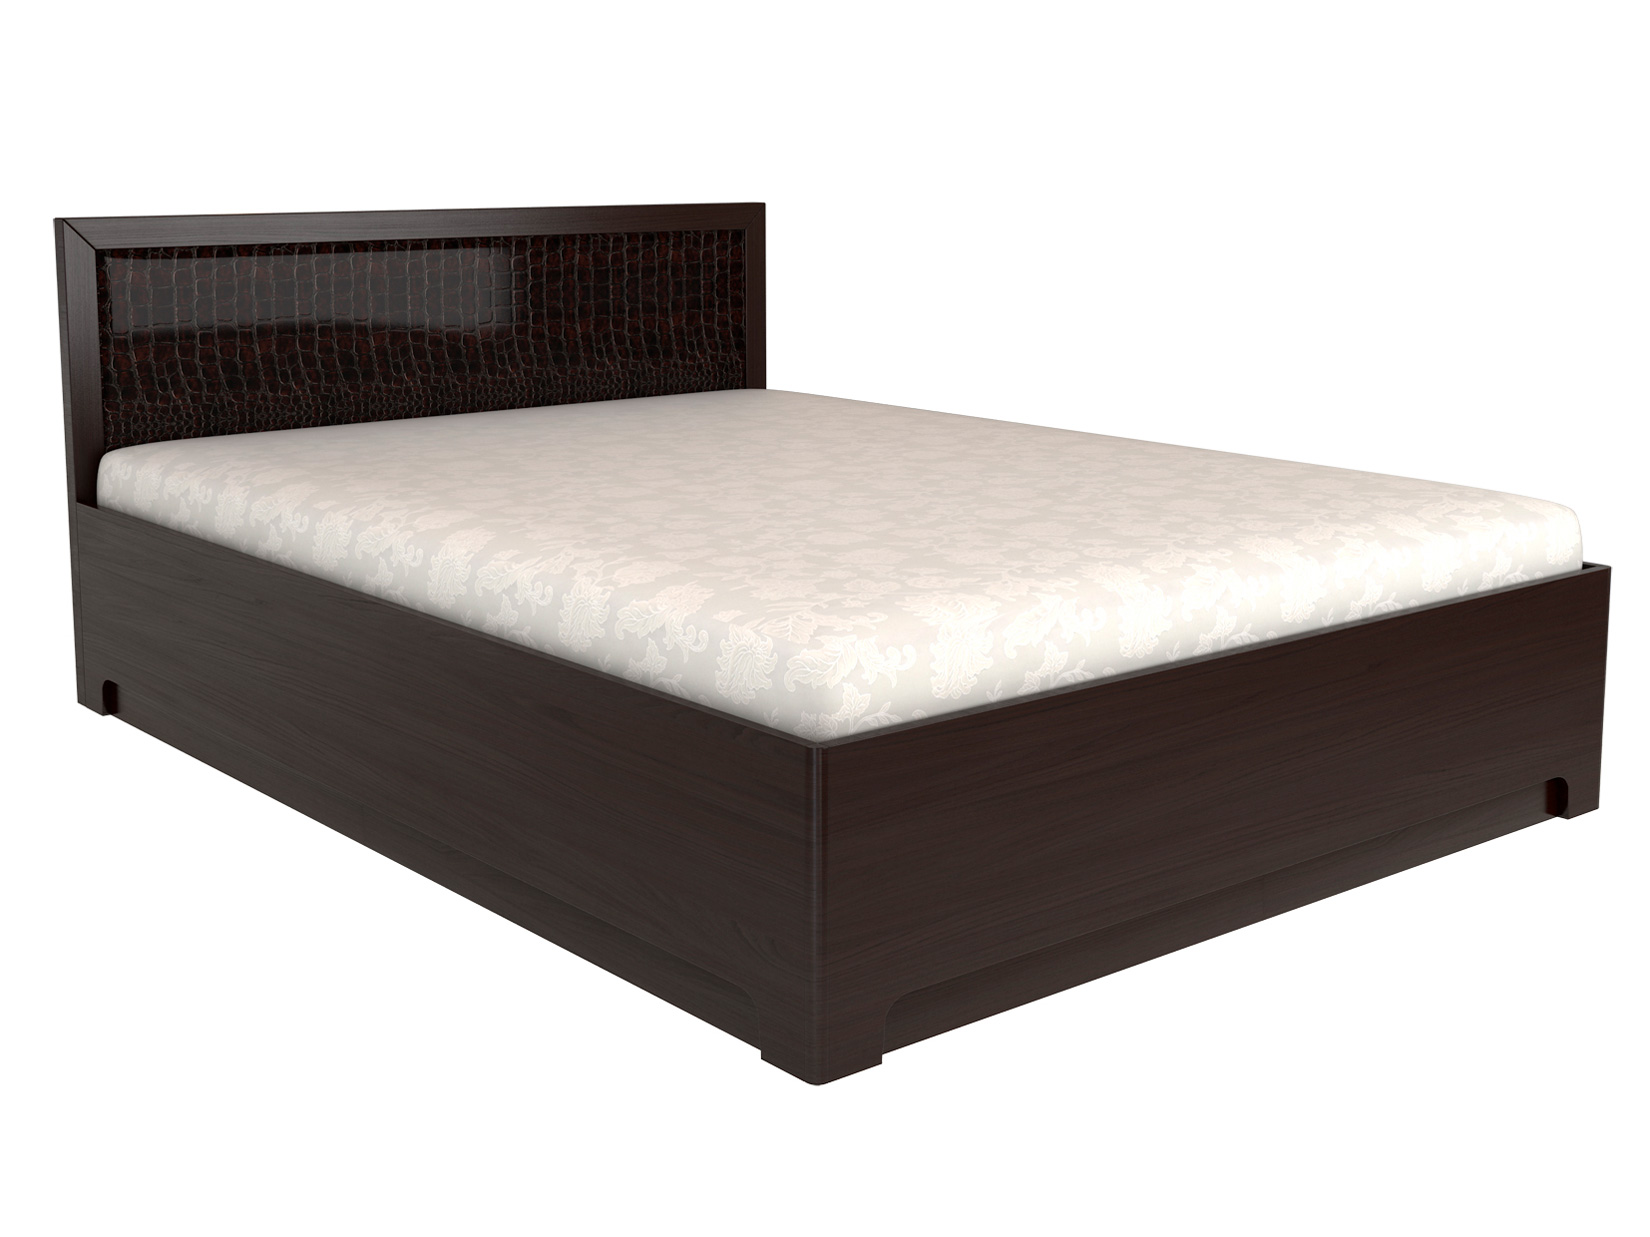 Двуспальная кровать с подъемным механизмом КУРАЖ Кровать Парма 1 / Кровать с подъемным механизмом Парма 1